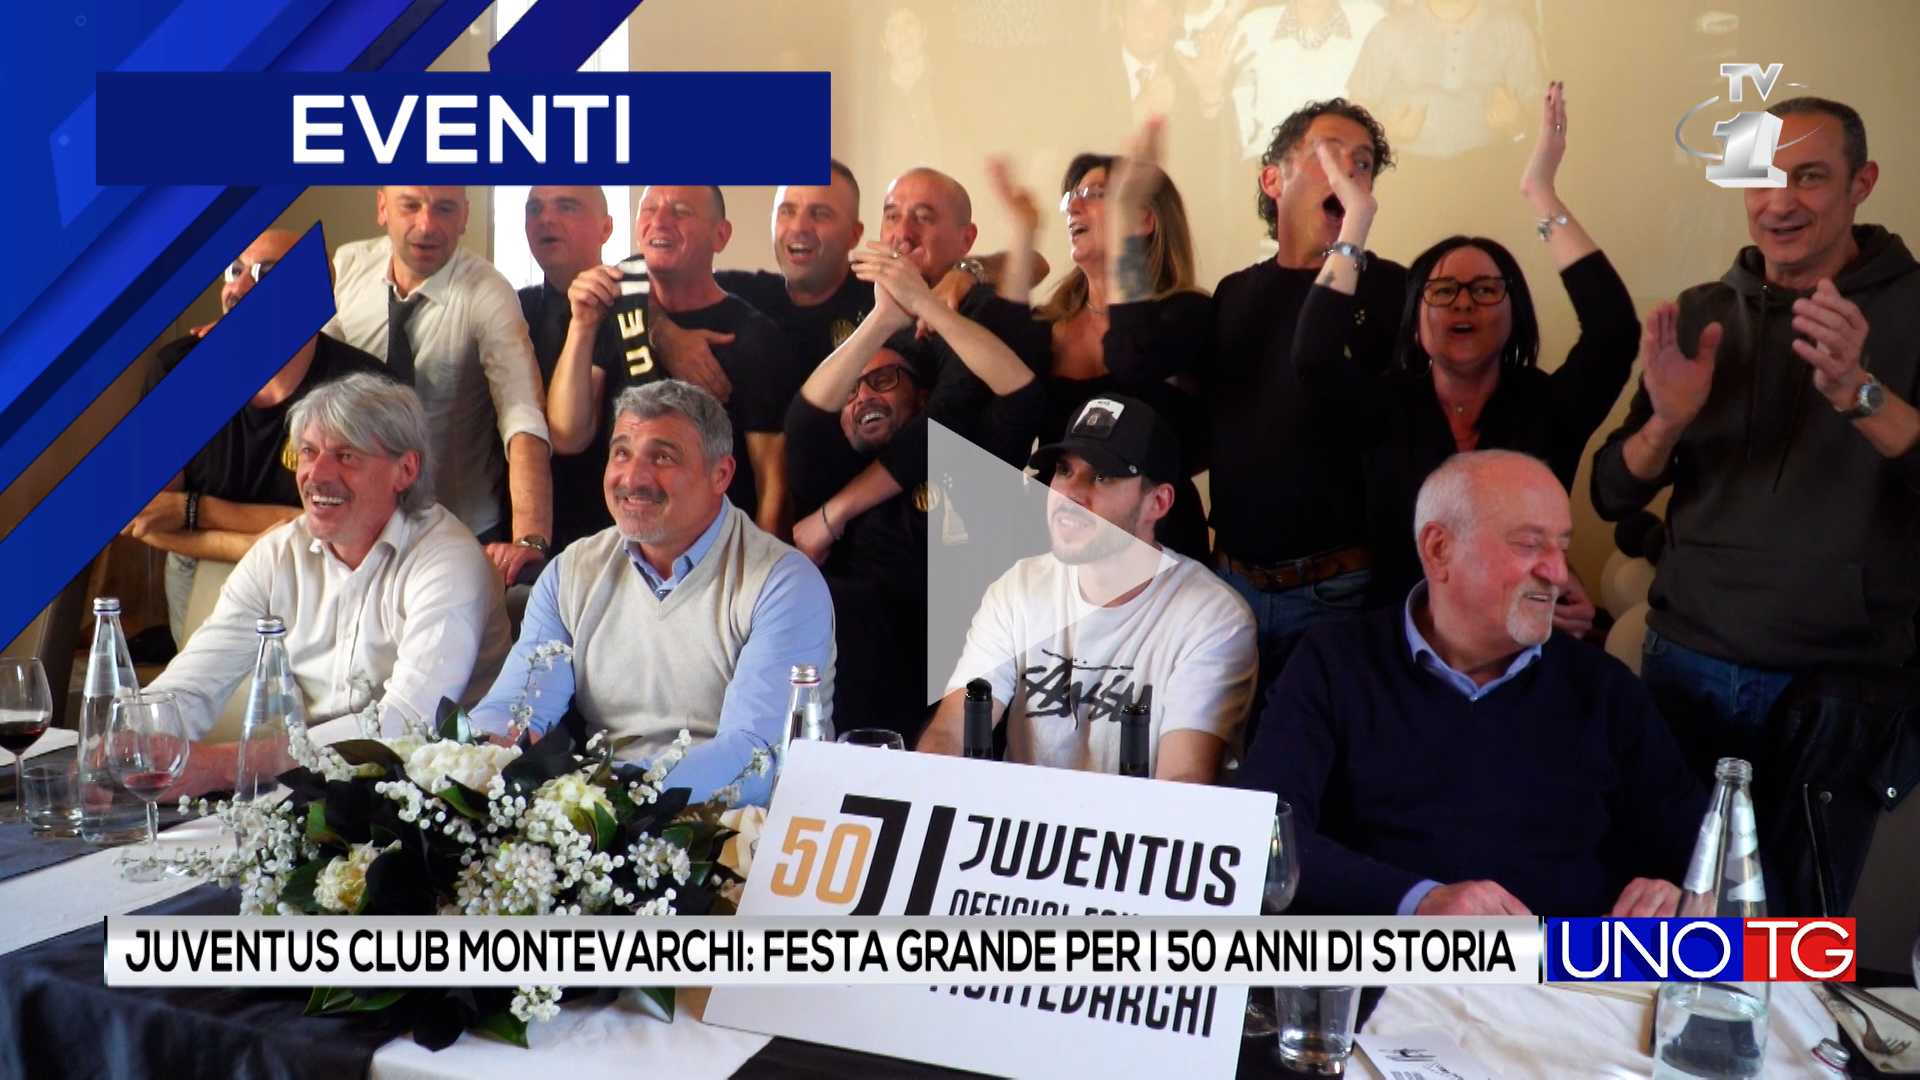 Juventus Club Montevarchi: grande festa per i 50 anni di storia